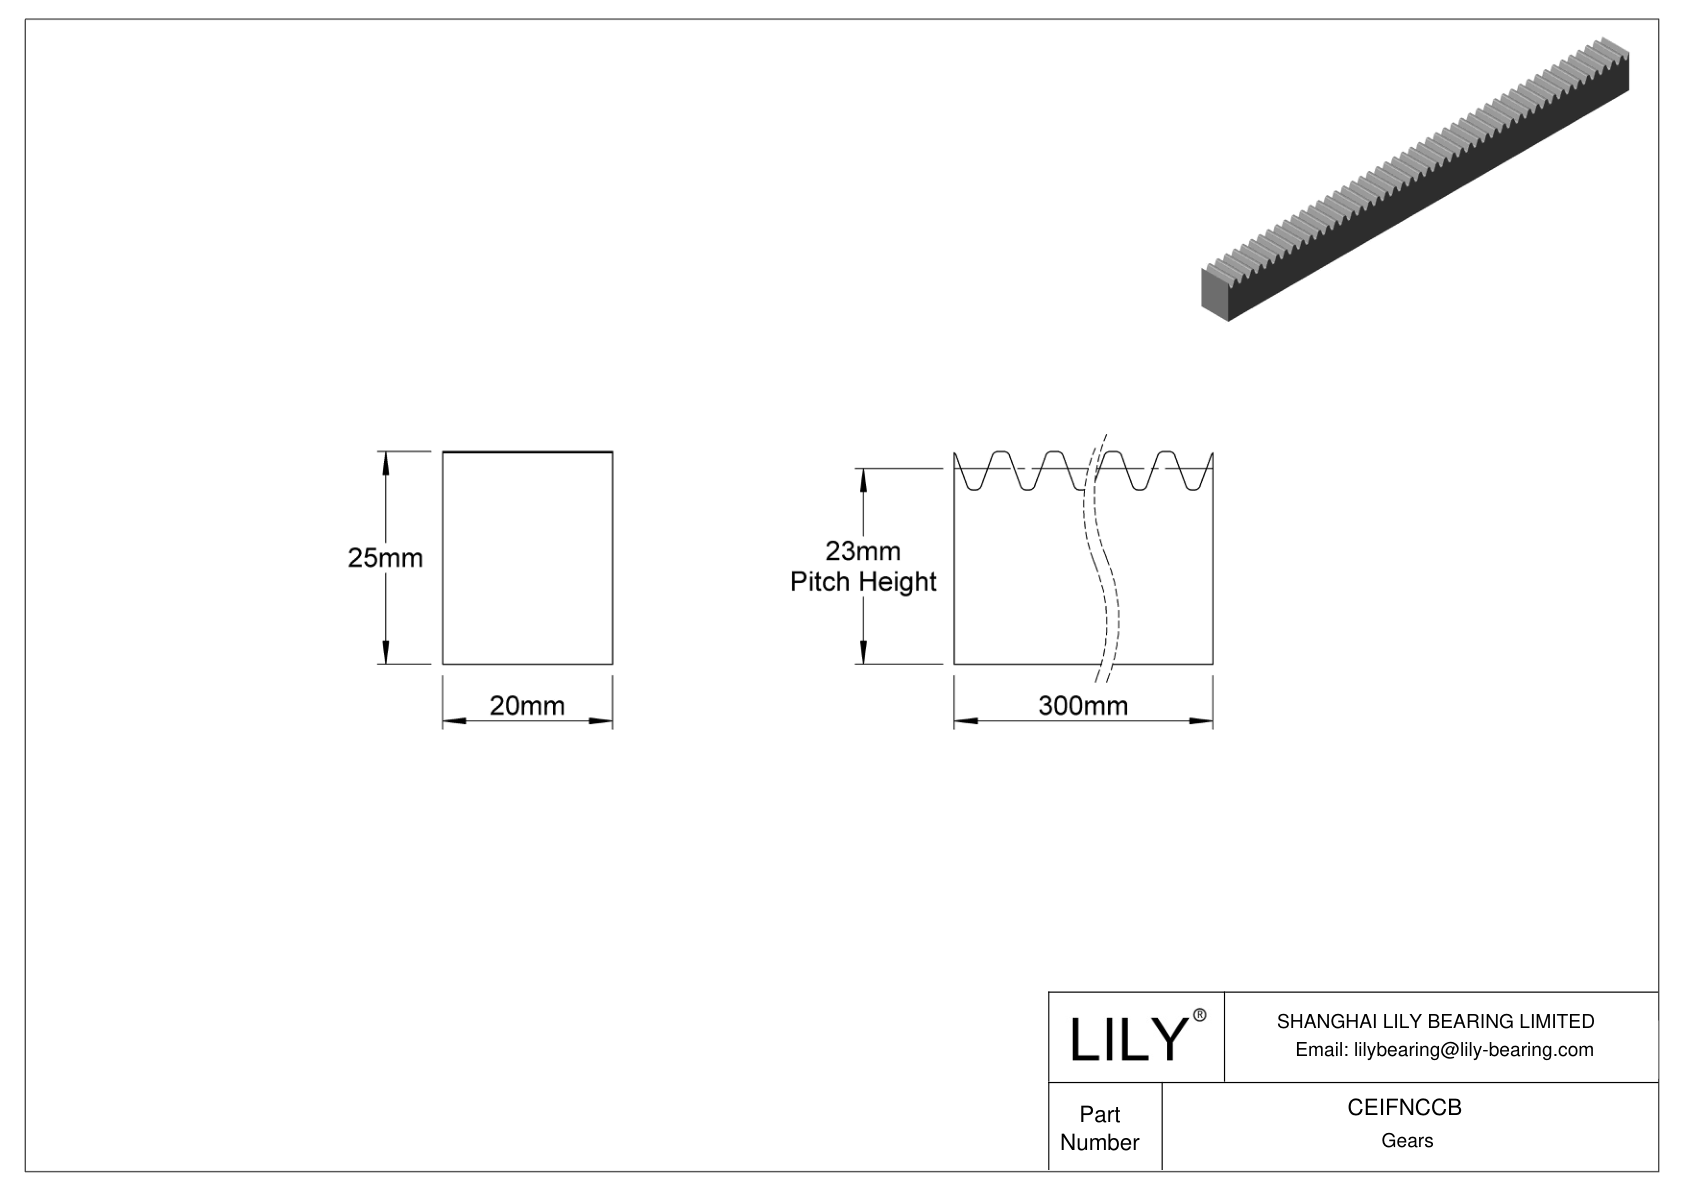 CEIFNCCB Cremalleras rectangulares métricas metálicas - Ángulo de presión de 20 dibujo cad